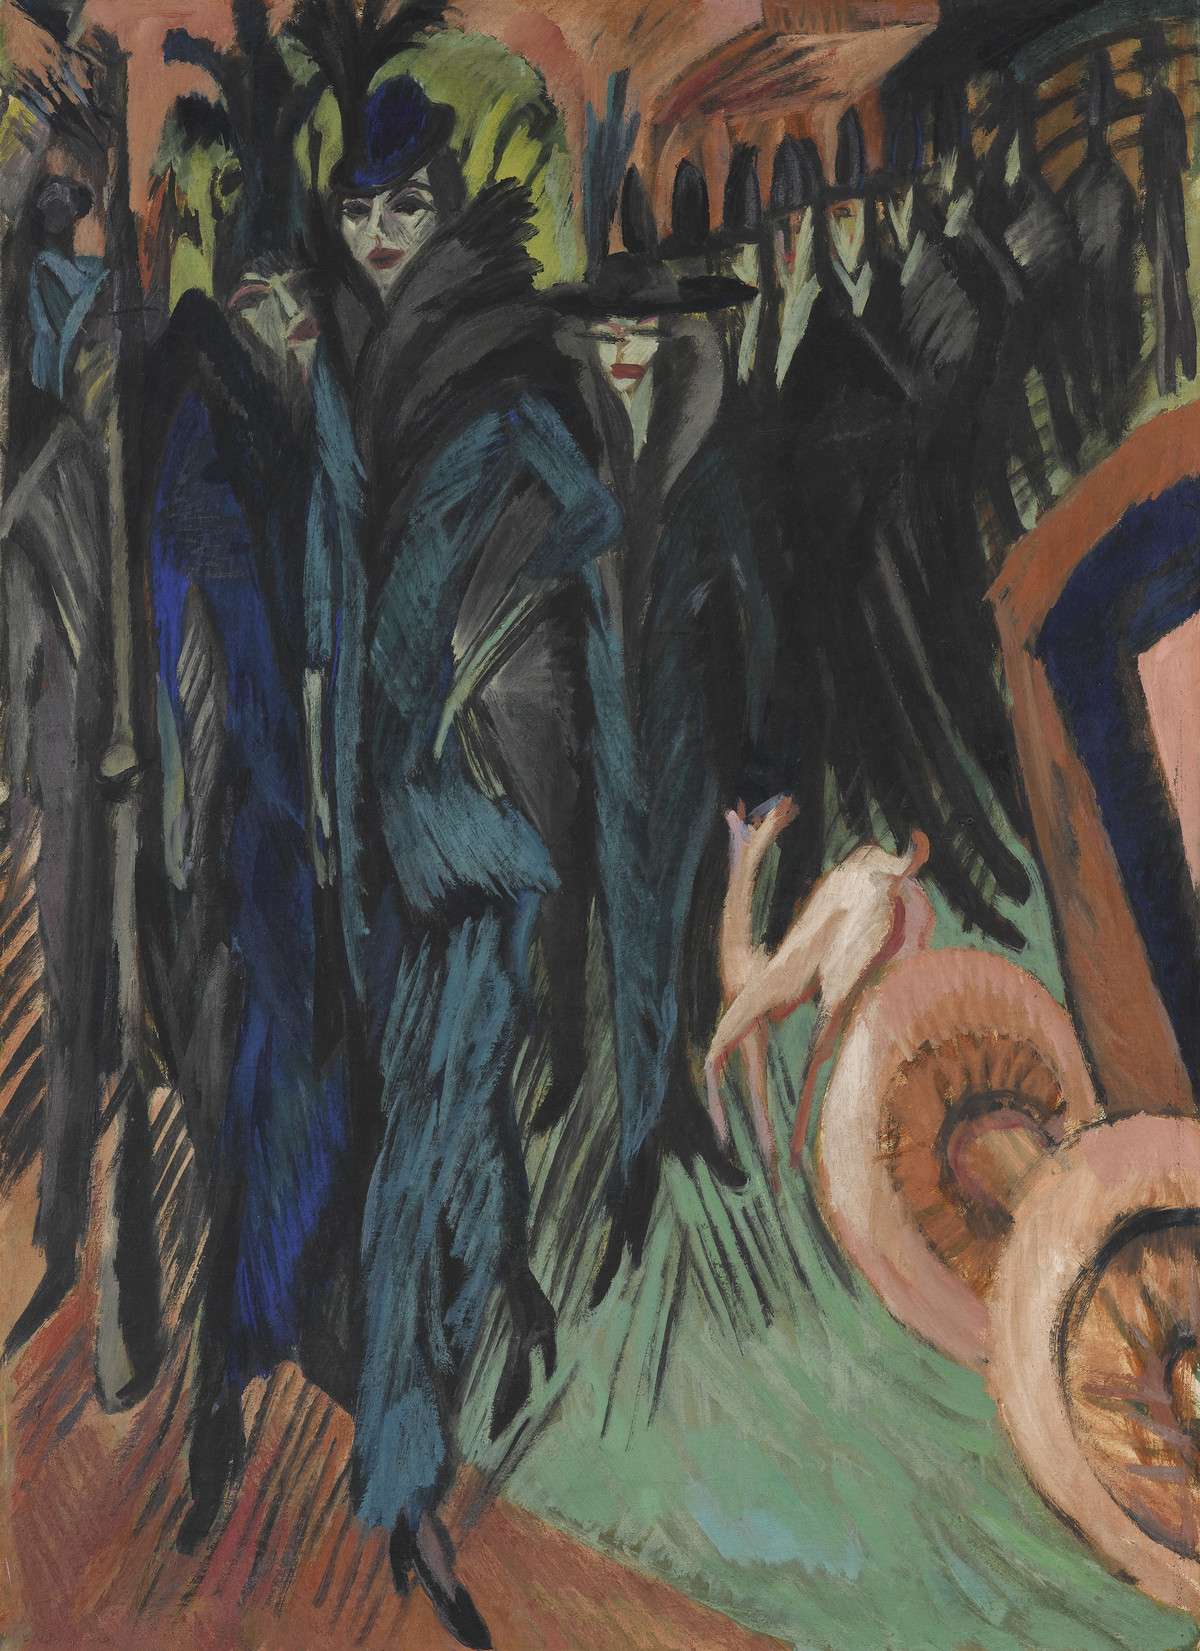 Ernst Ludwig Kirchner: Friedrichstrasse, Berlin, 1914, Öl auf Leinwand, 125 × 91 cm, Staatsgalerie Stuttgart, Foto: bpk/Staatsgalerie Stuttgart